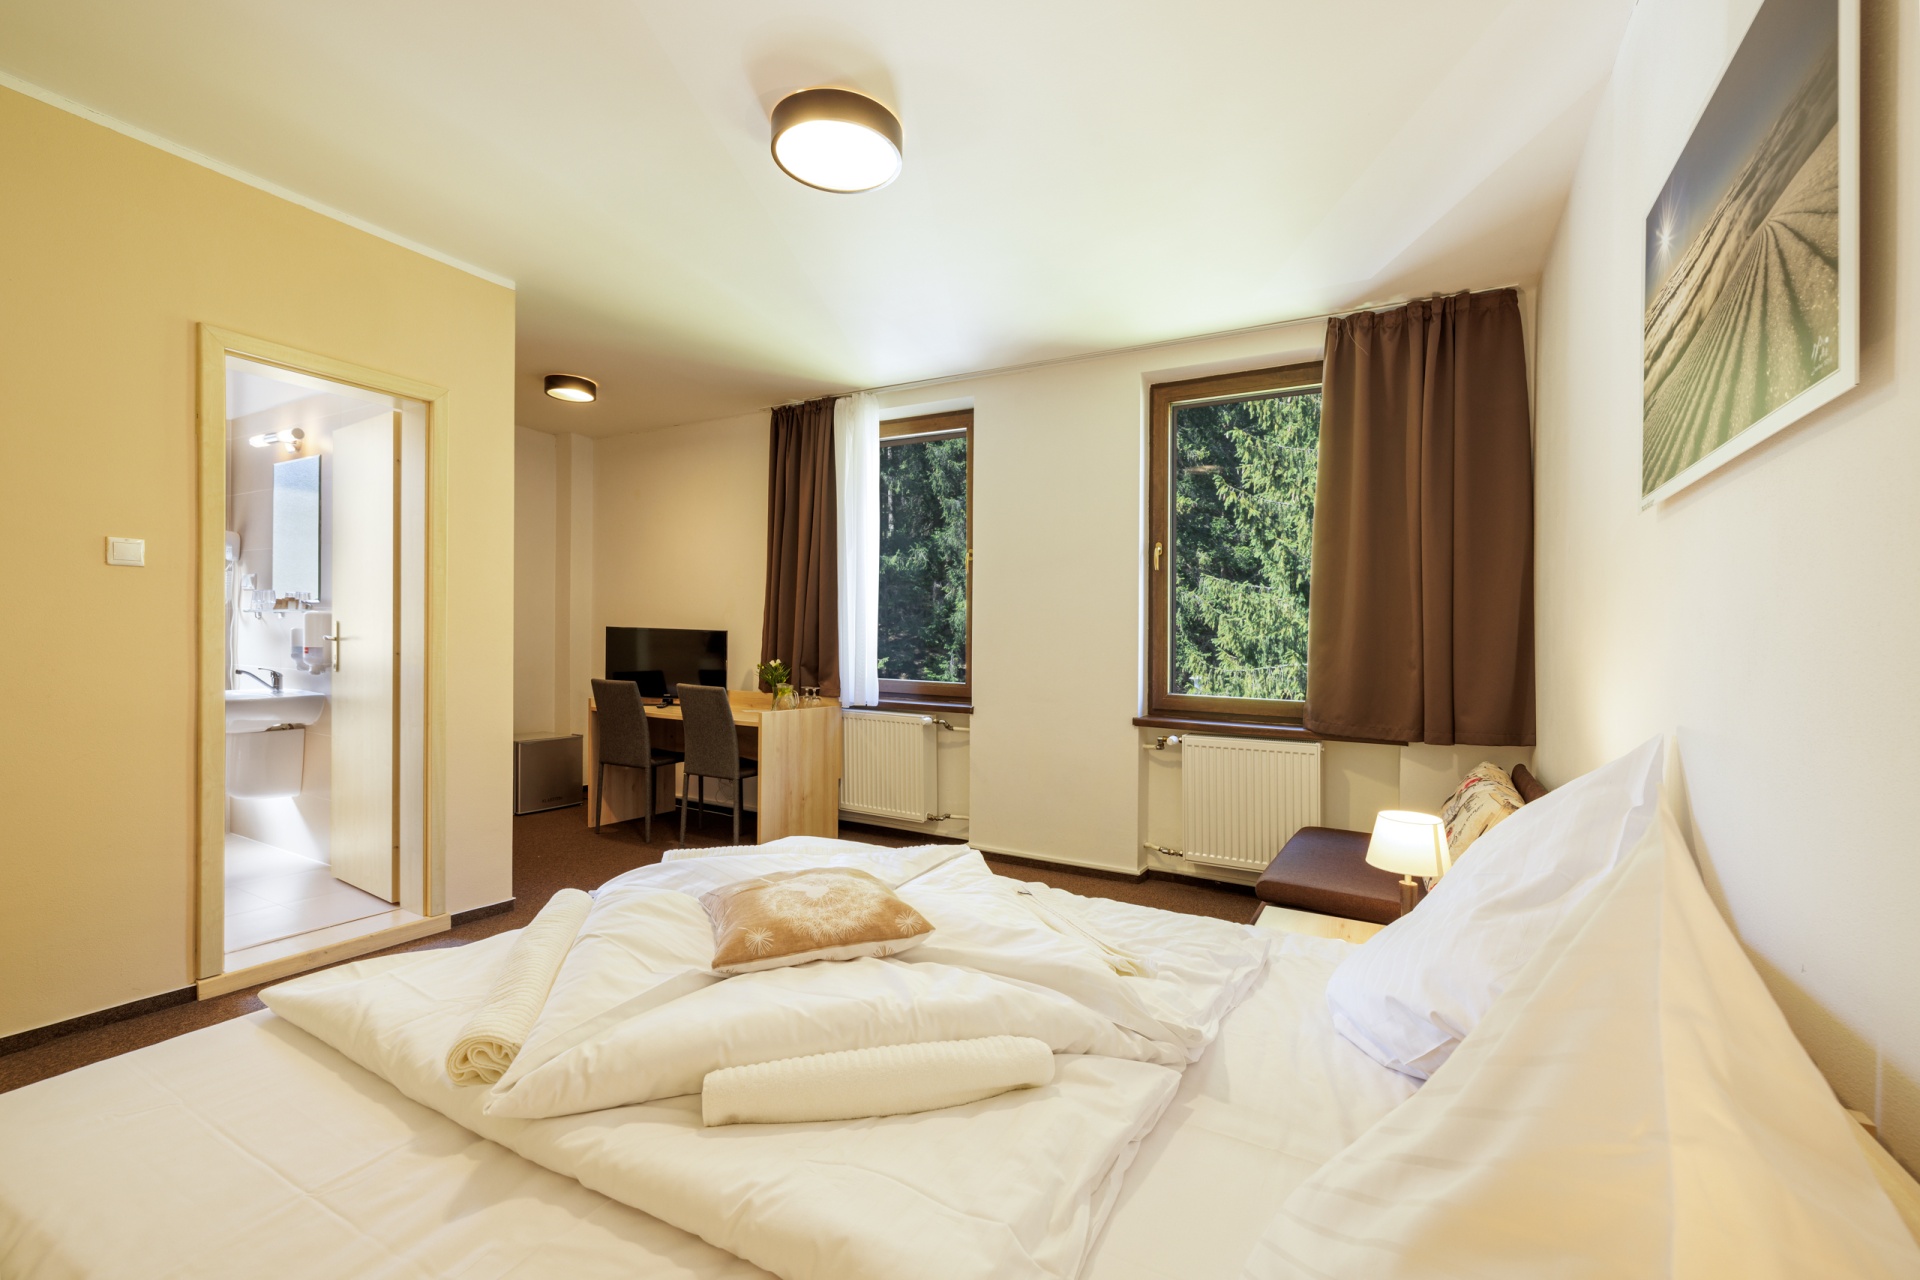 Ubytovanie, Lopušná dolina, rezort, izba, dvojposteľová izba, ubytovanie na slovensku